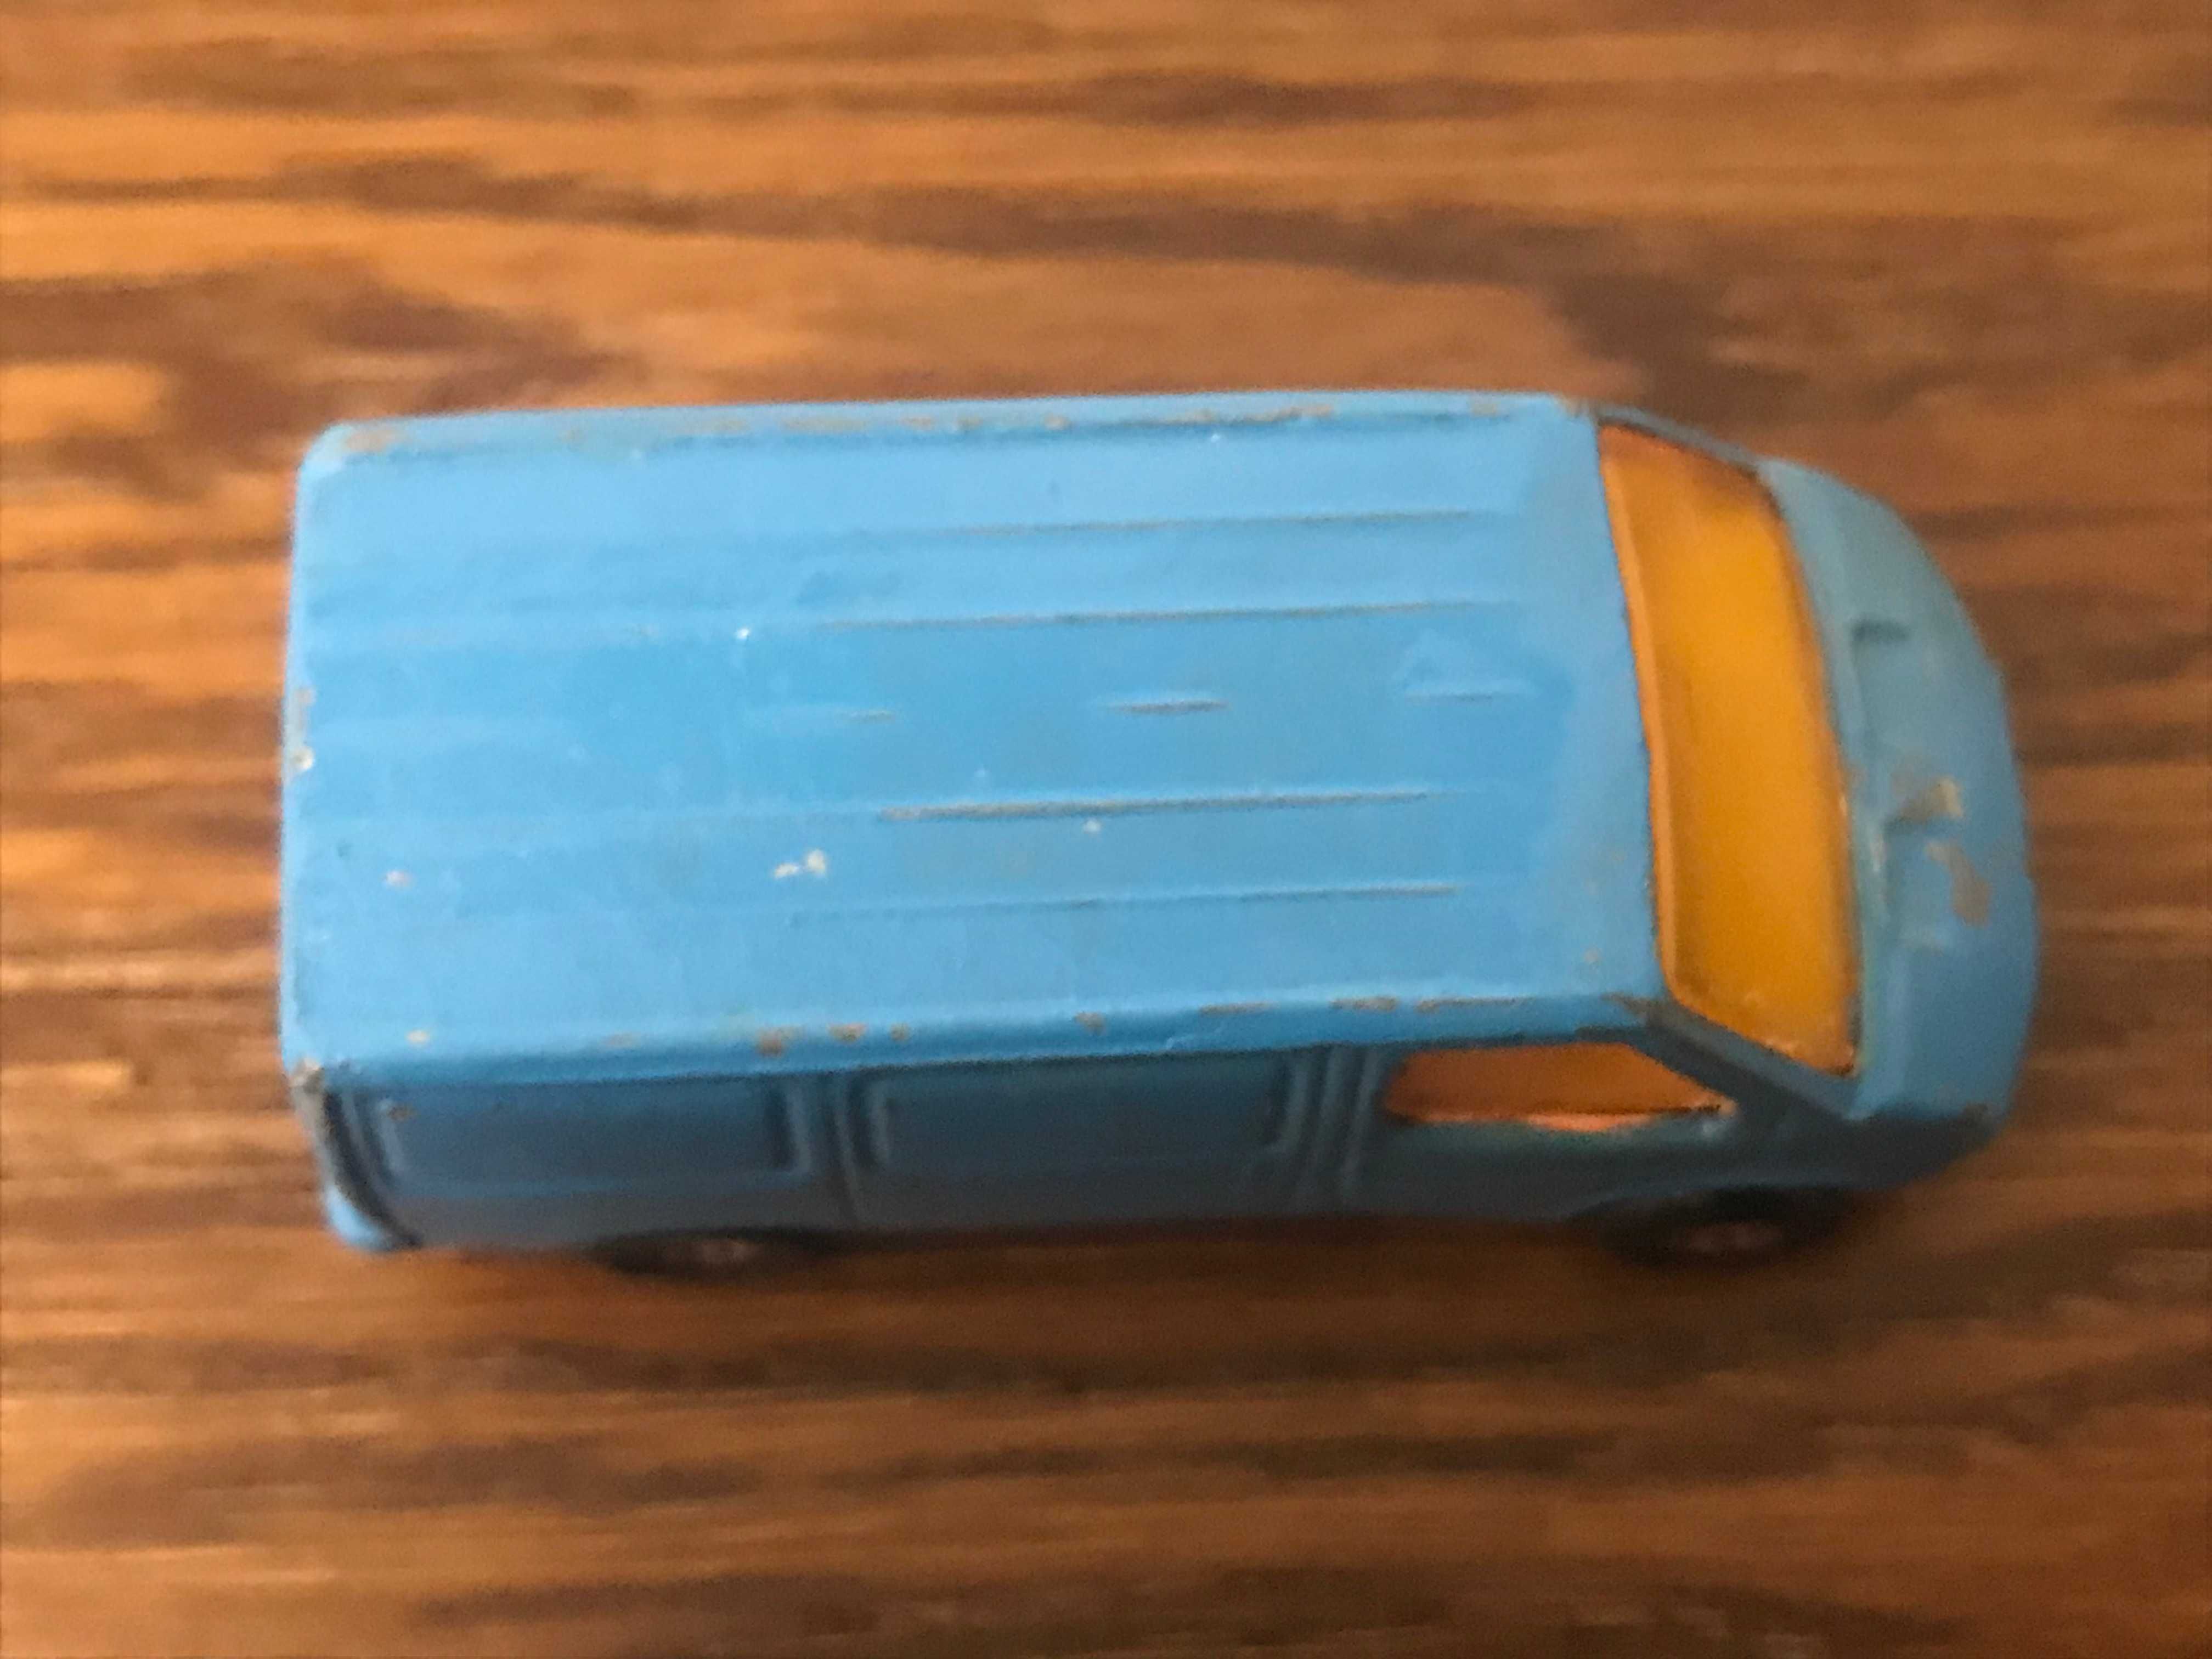 Matchbox Ford Transit resorak vintage prl